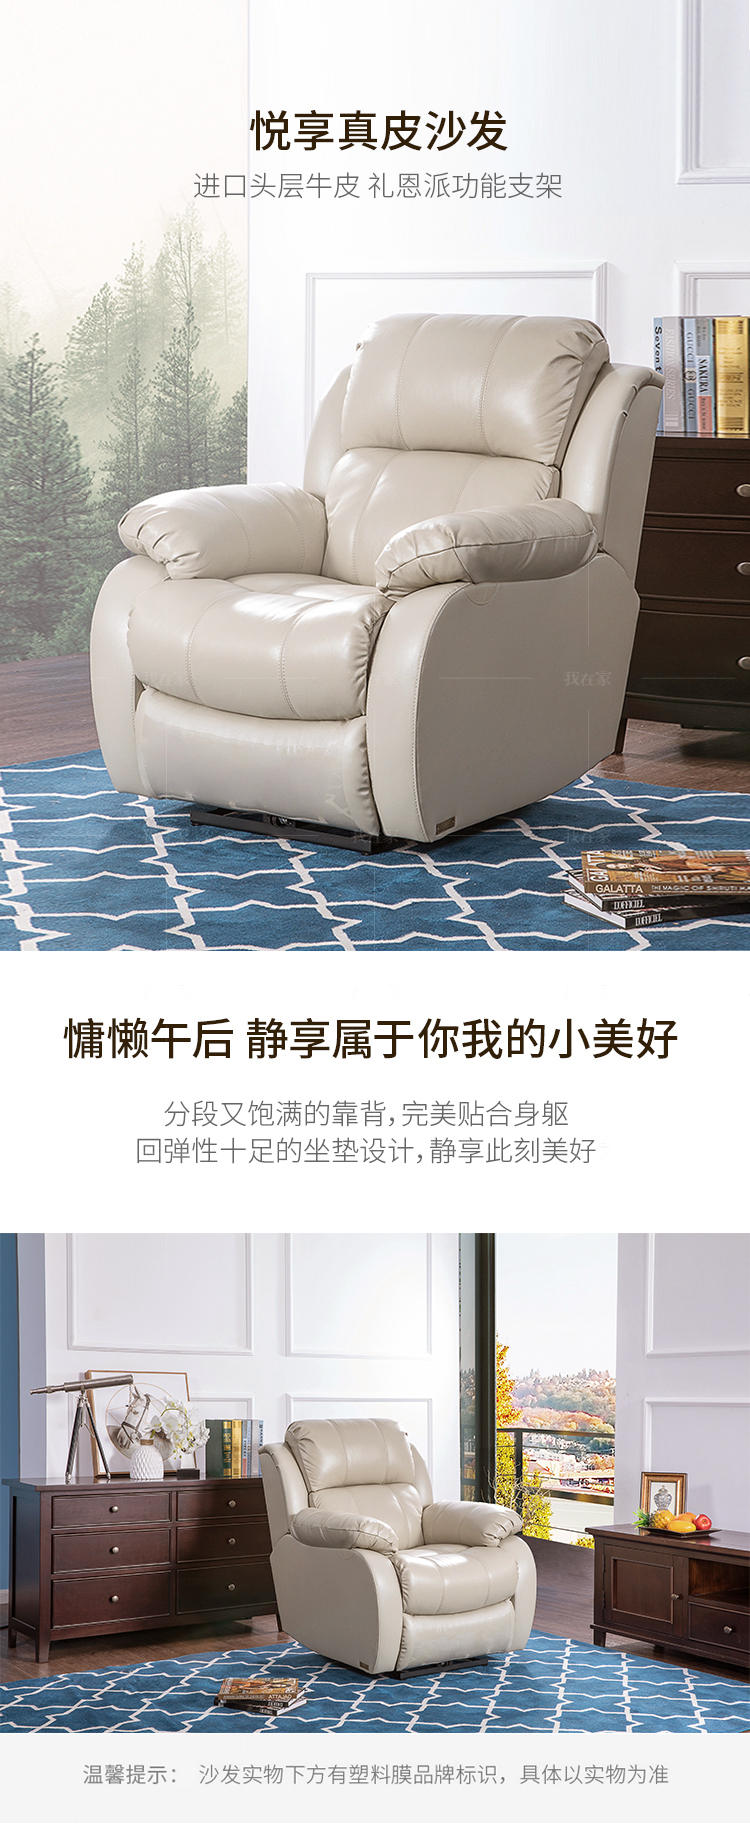 现代简约风格悦享真皮沙发的家具详细介绍